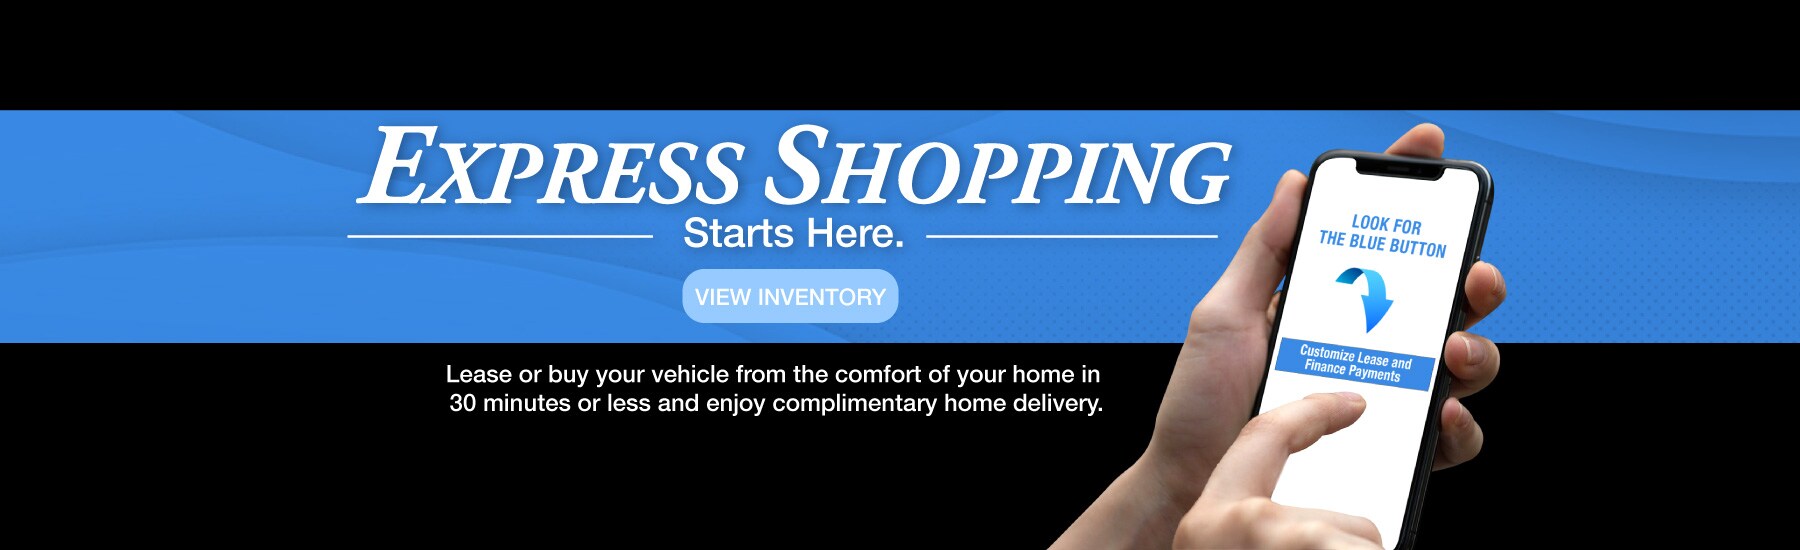 Subaru White Plains Express Shopping Image